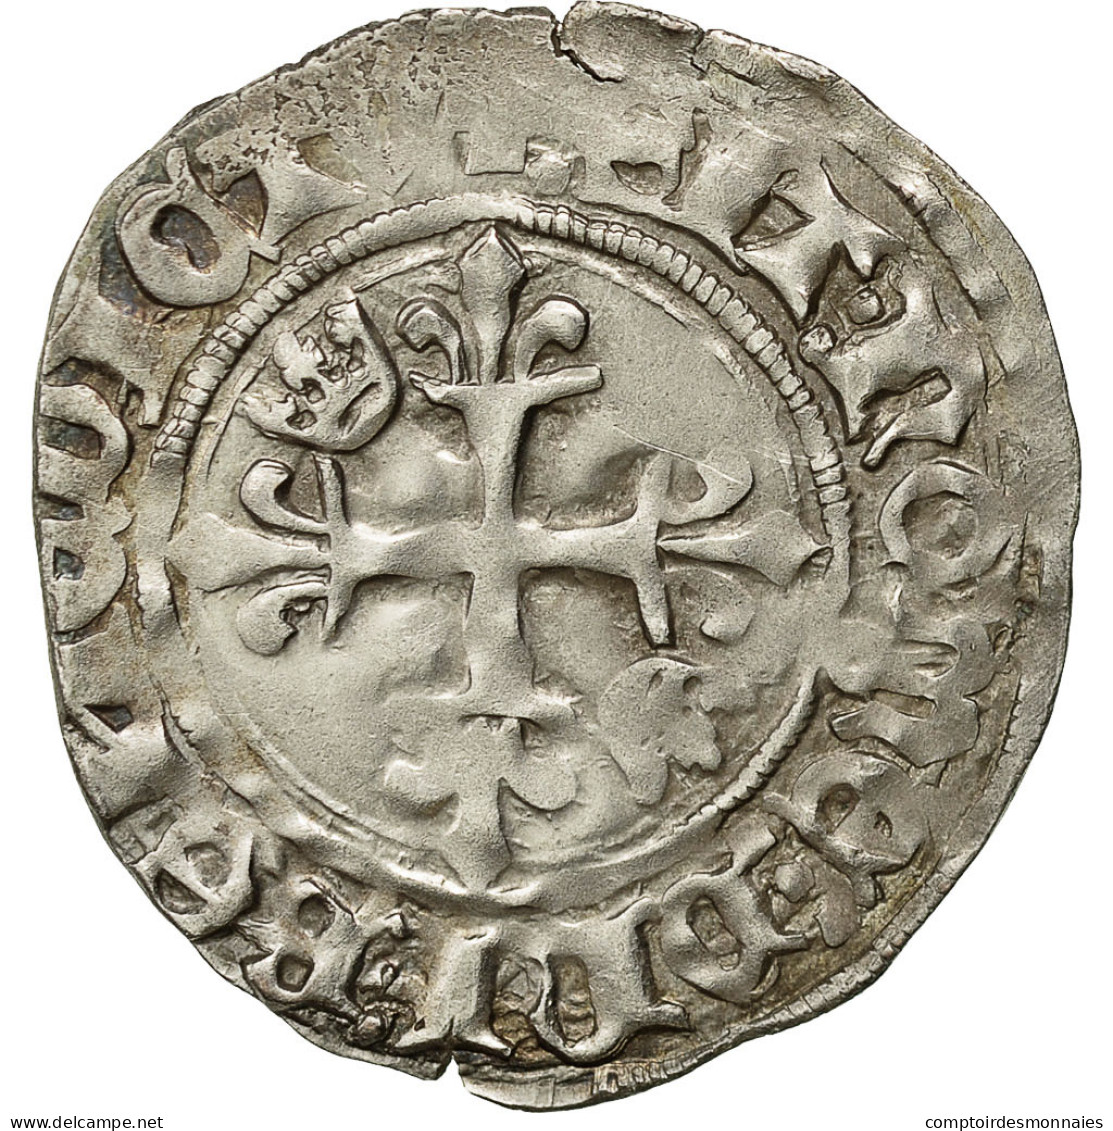 France, Charles VI, Florette, 1417, Tours, Billon, TTB, Duplessy:387A - 1380-1422 Carlos VI El Bien Amado